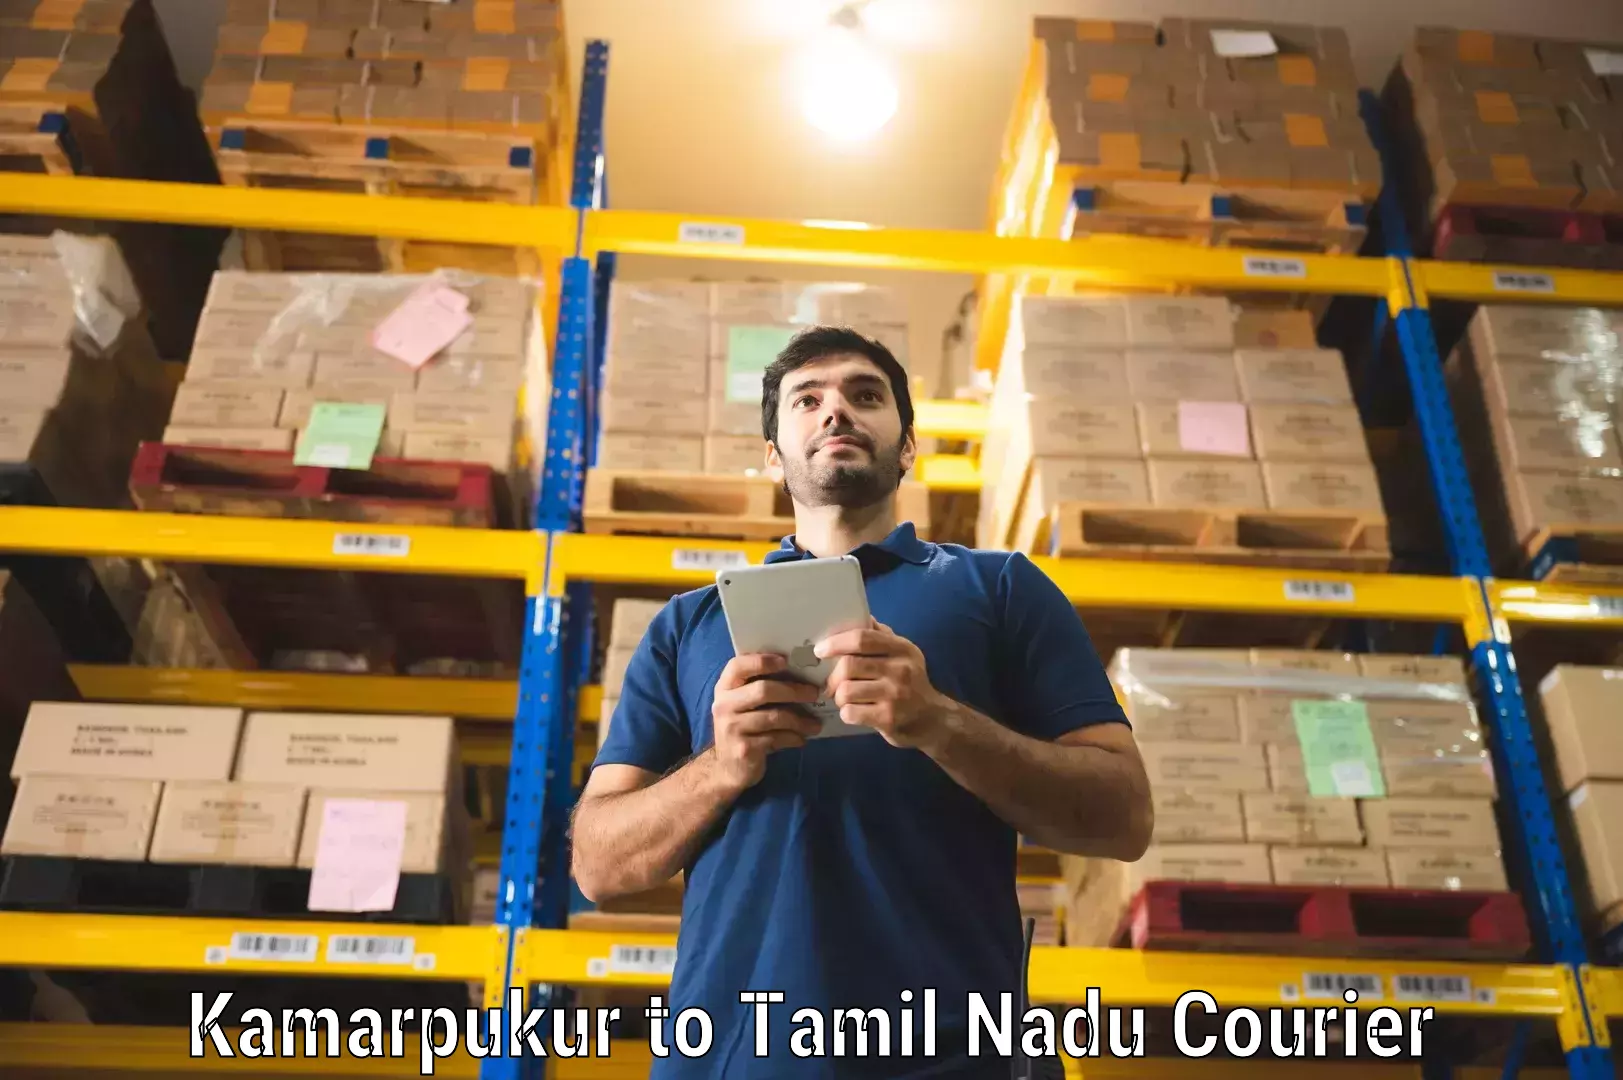 Express logistics in Kamarpukur to Tamil Nadu